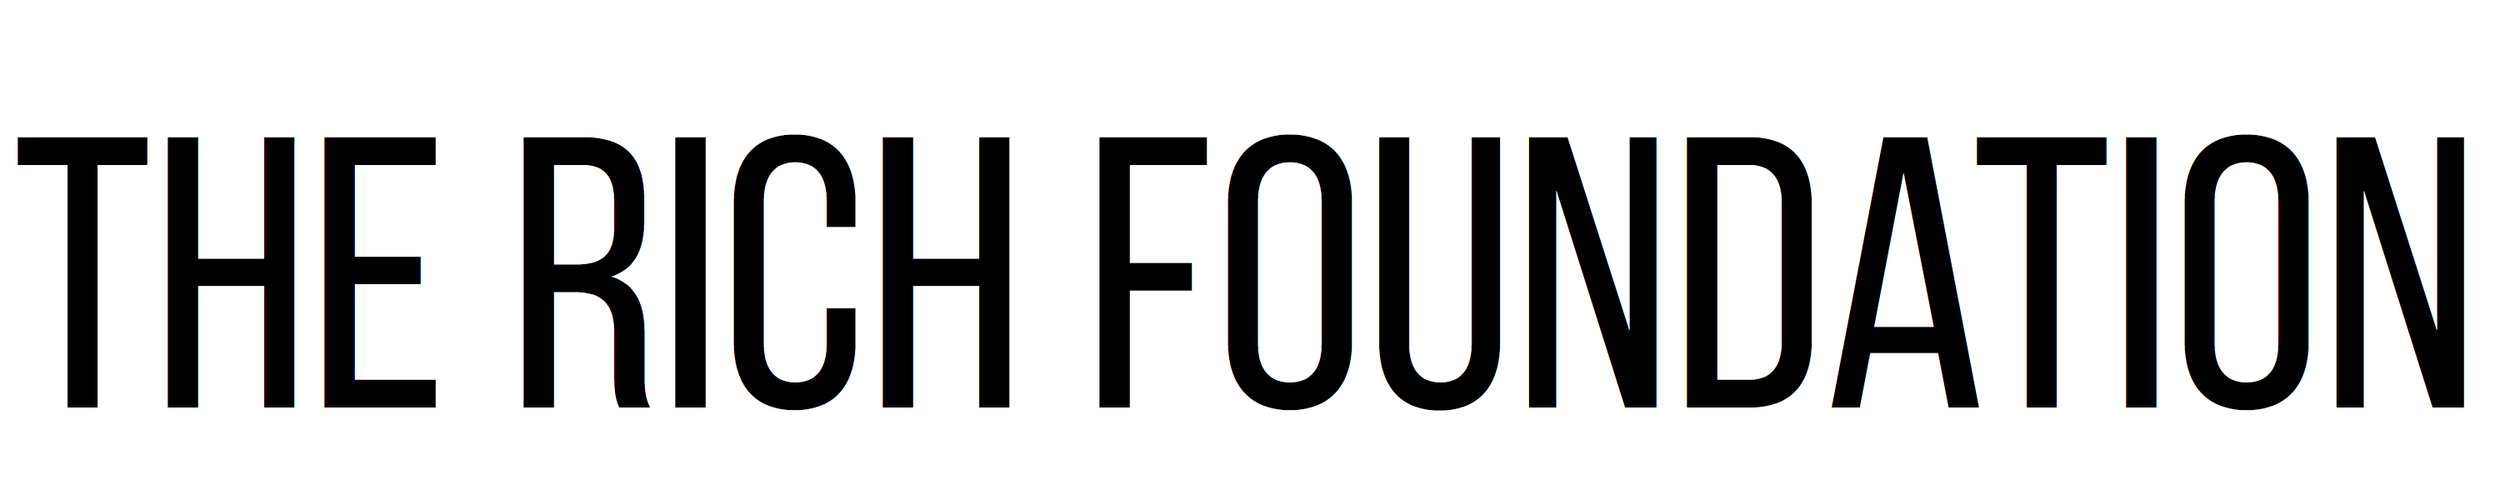 The Rich Foundation logo.jpg